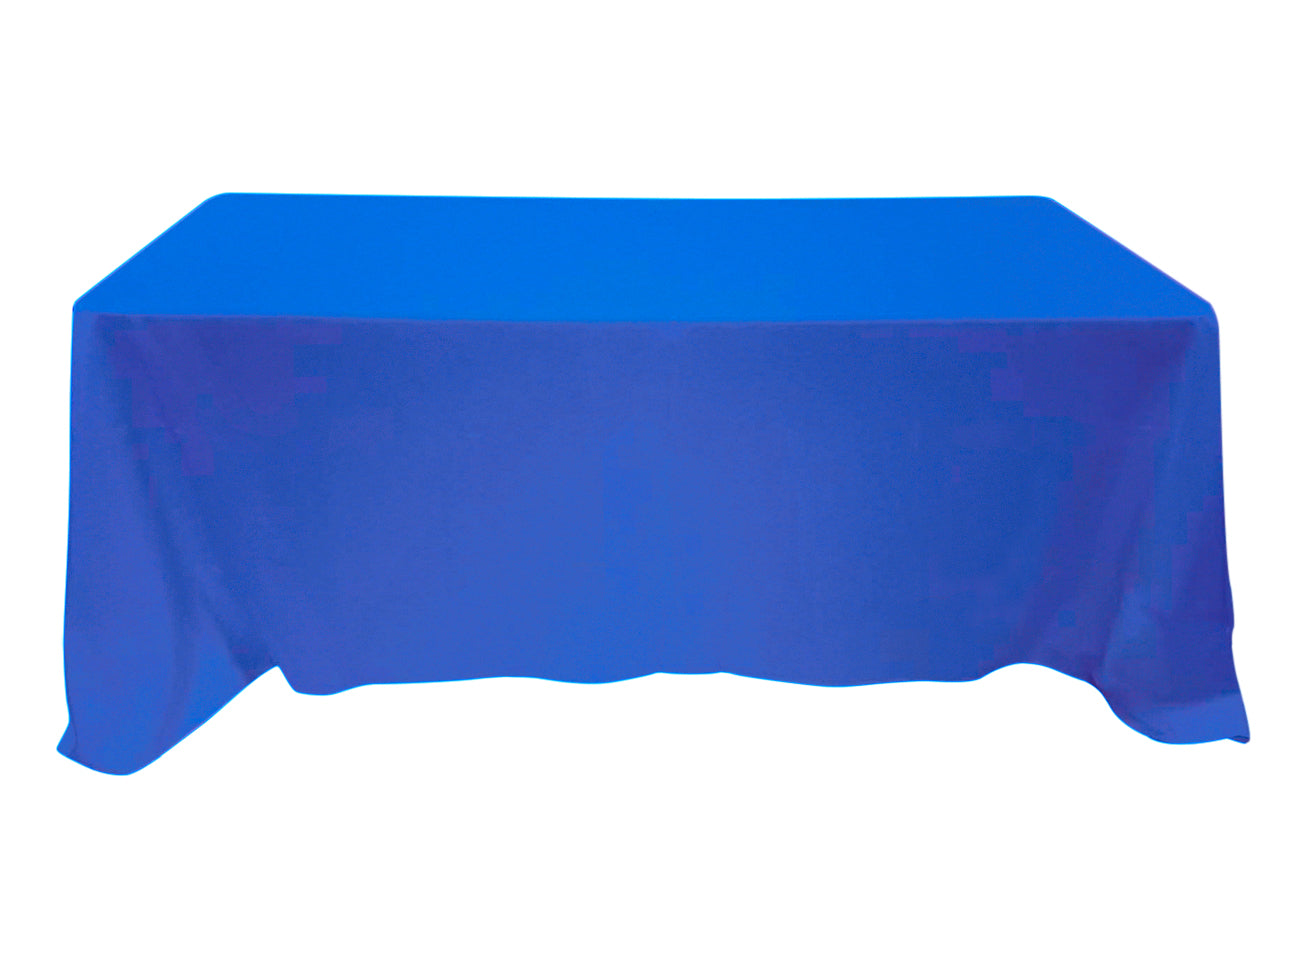 blue table cloth